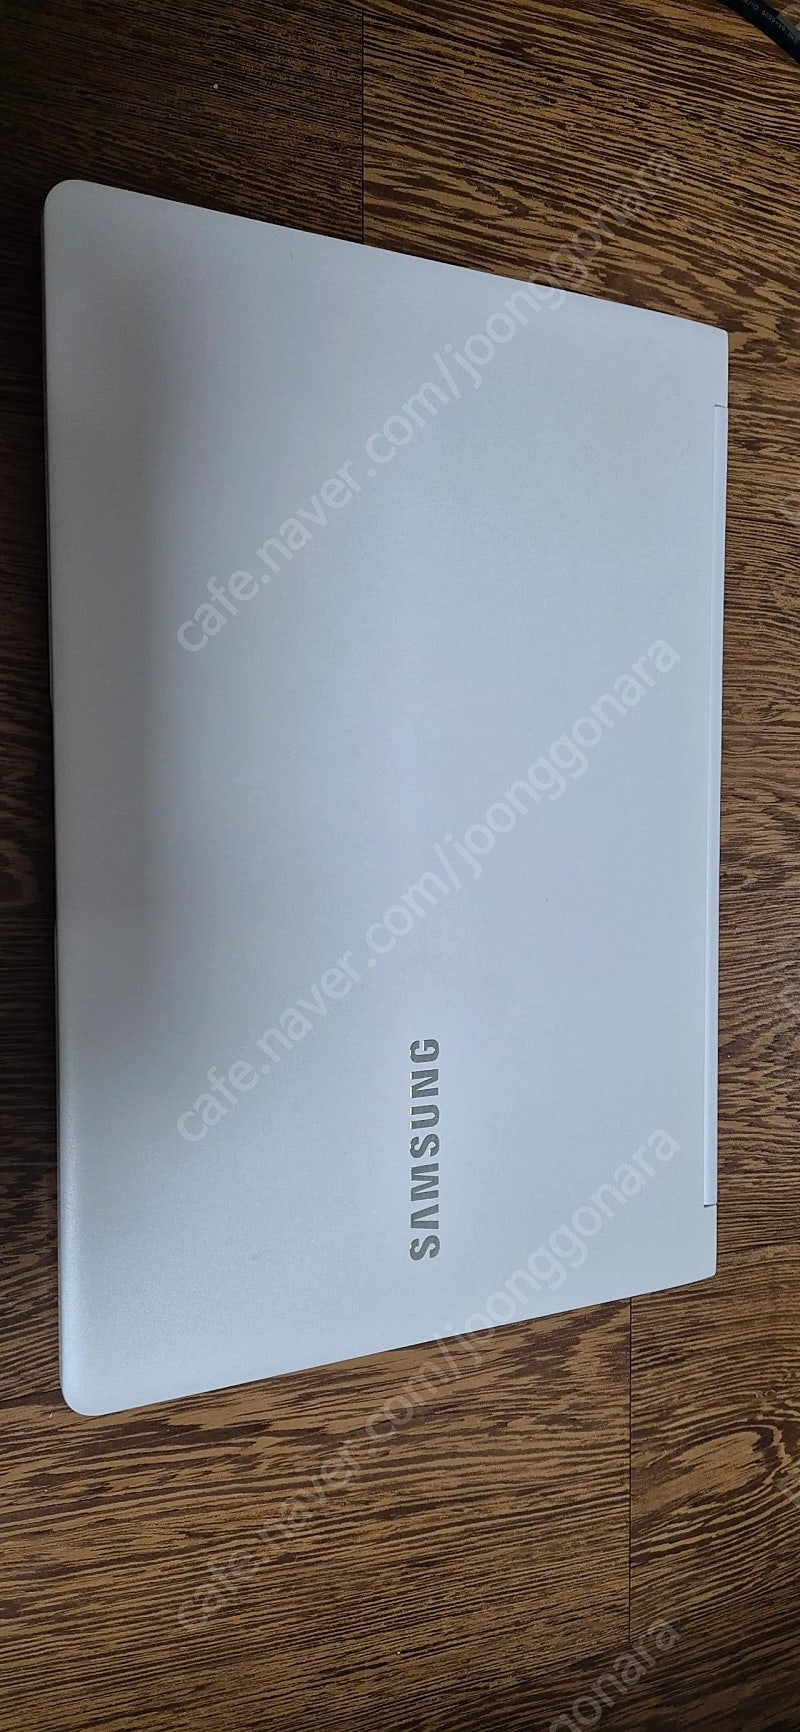 삼성 초경량 노트북 NT900X3M 판매합니다. (13.3인치 840g)